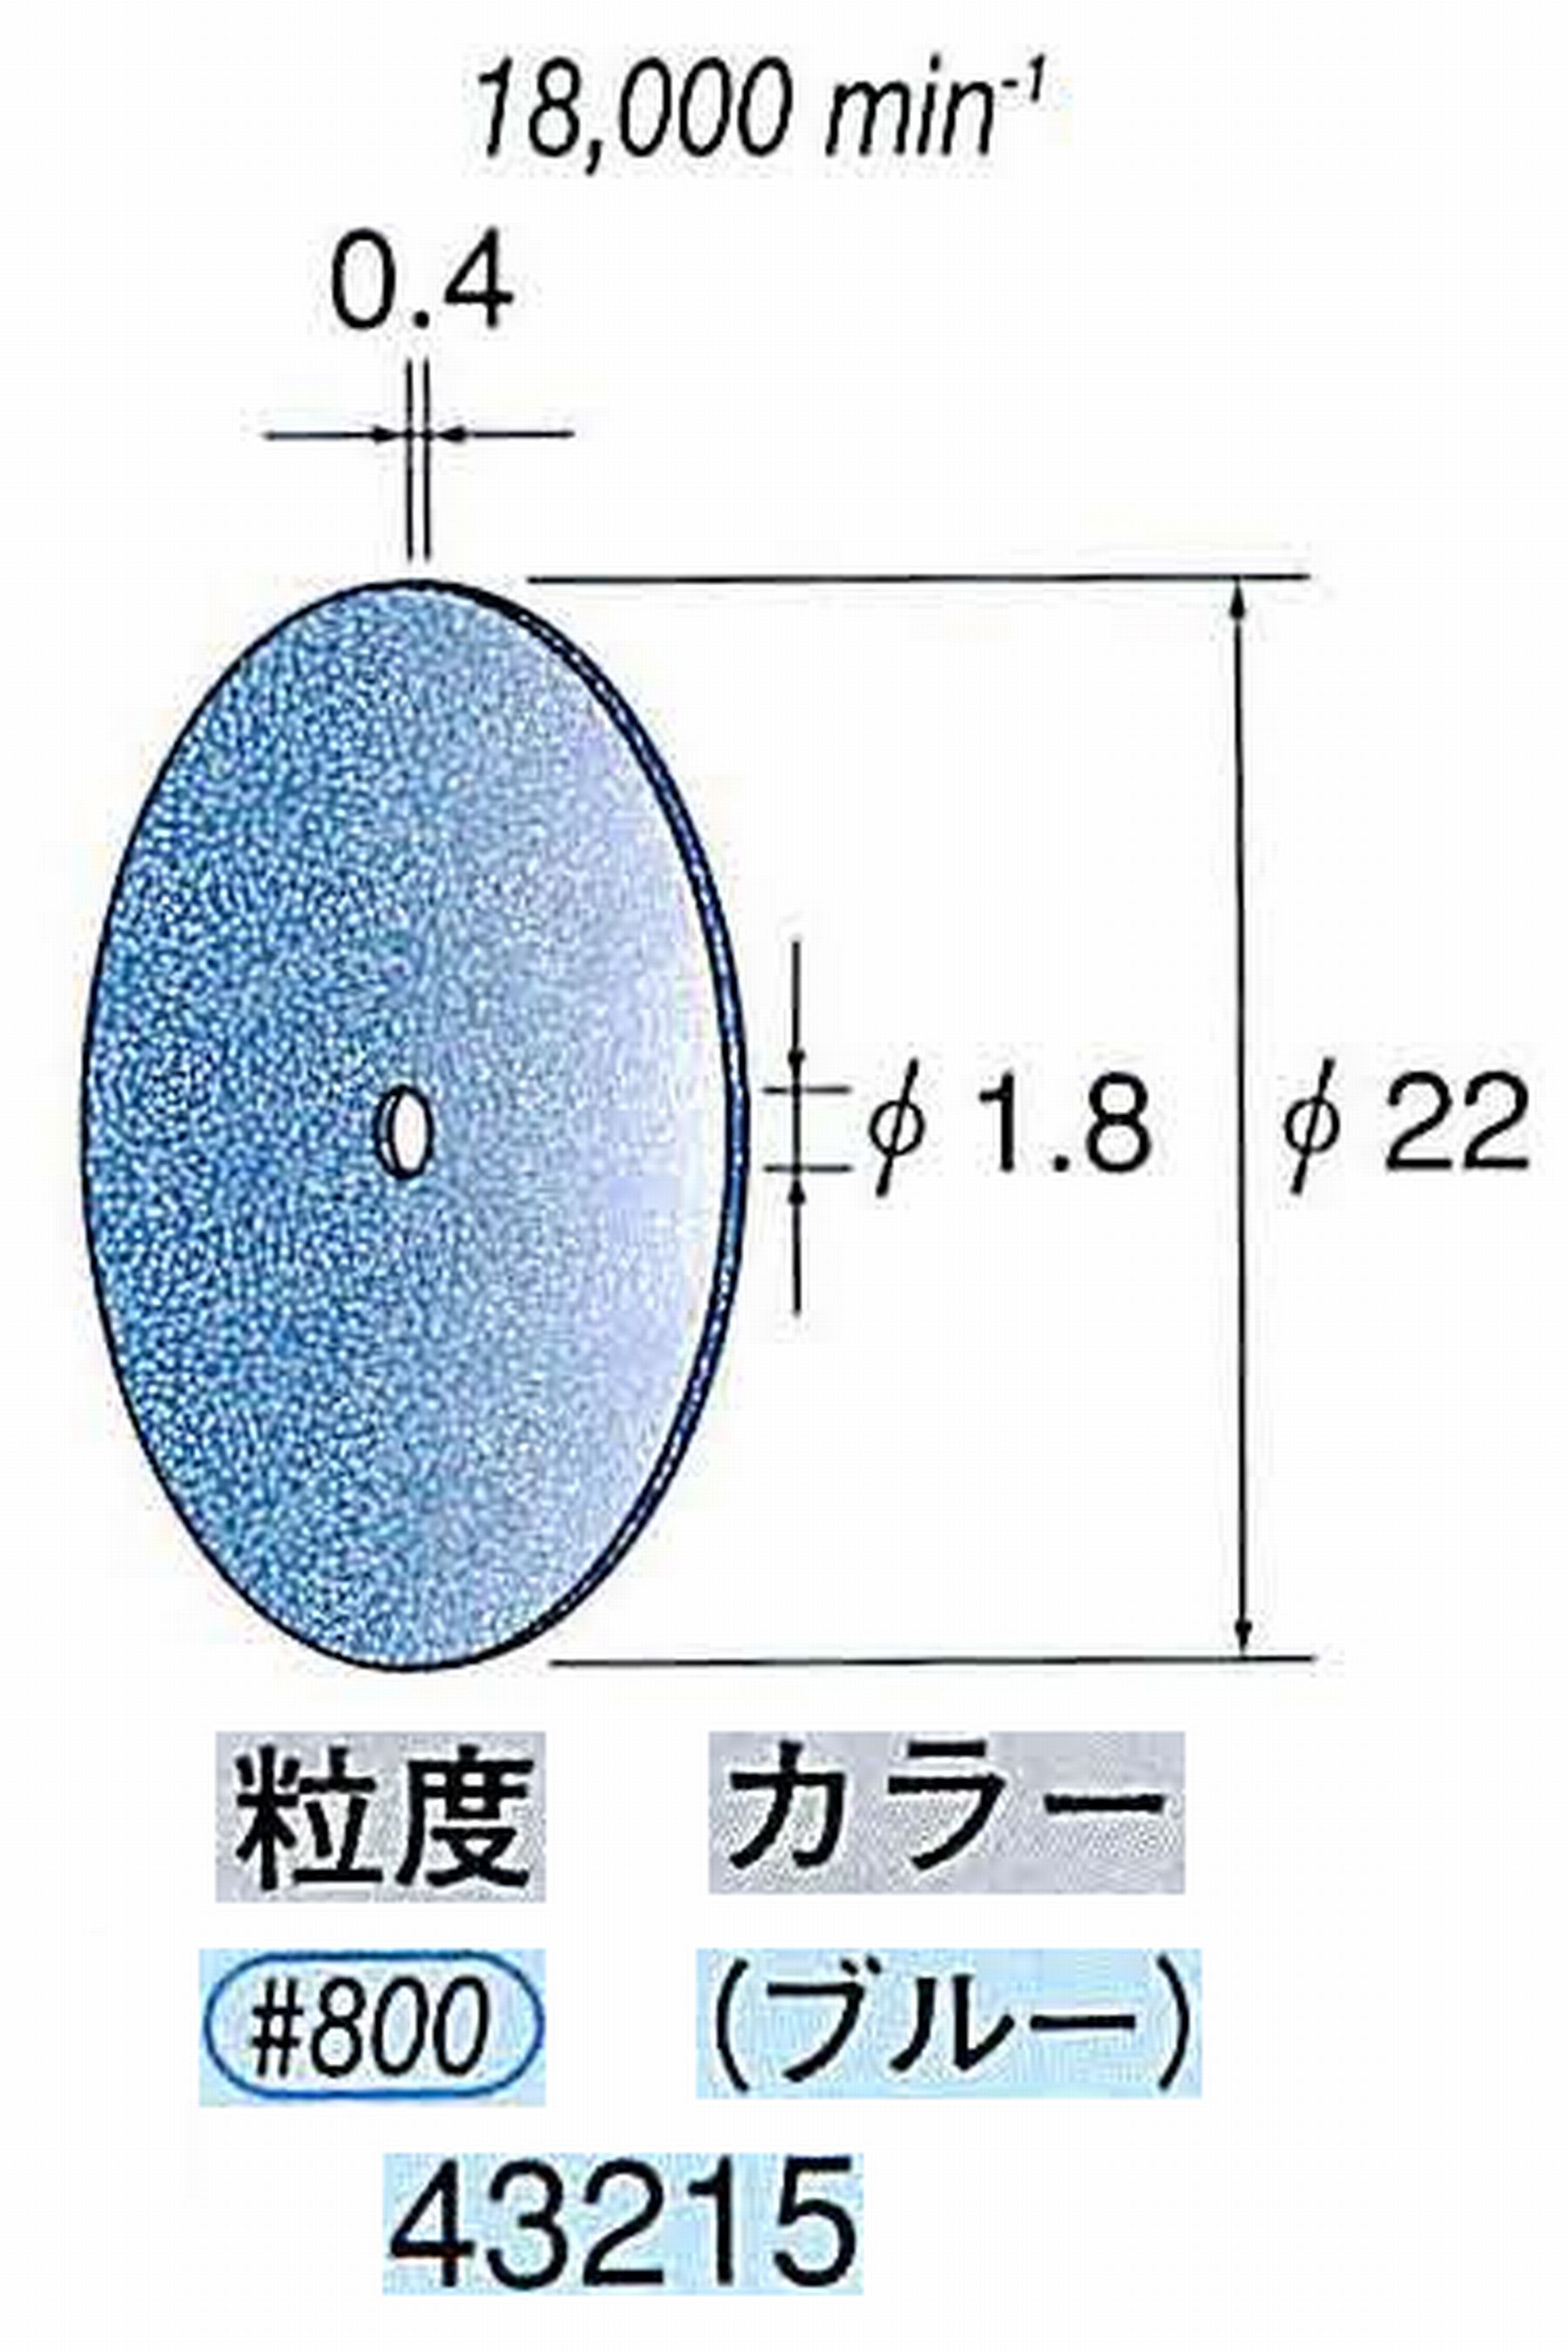 ナカニシ/NAKANISHI セラファイバー砥石ディスク(カラー ブルー) 43215